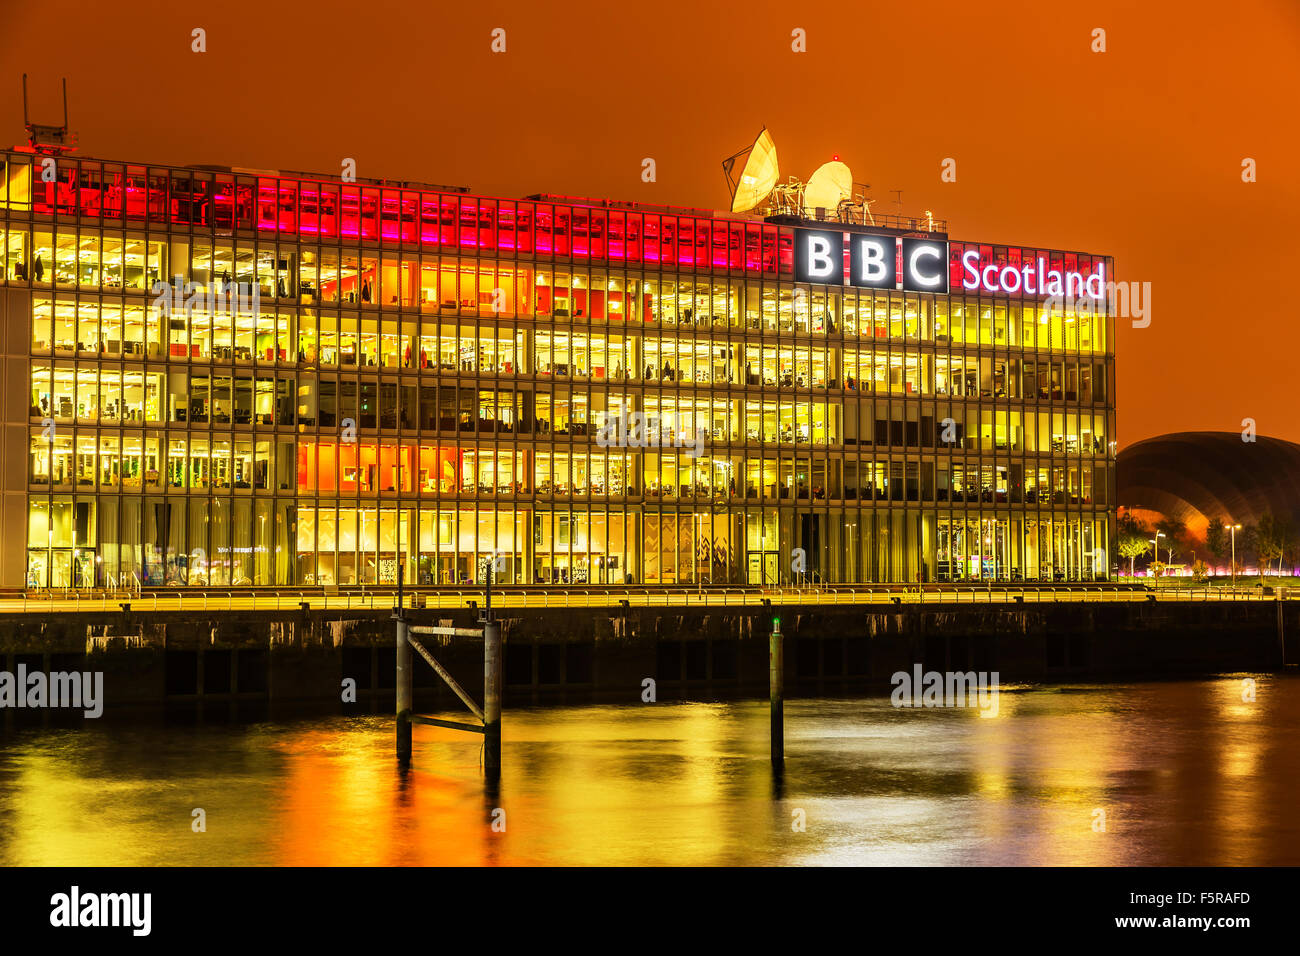 GLASGOW, ÉCOSSE, Royaume-Uni - 27 octobre 2015 : La BBC Scotland studios TV sur les rives de la Clyde, Glasgow, Écosse, Royaume-Uni Banque D'Images